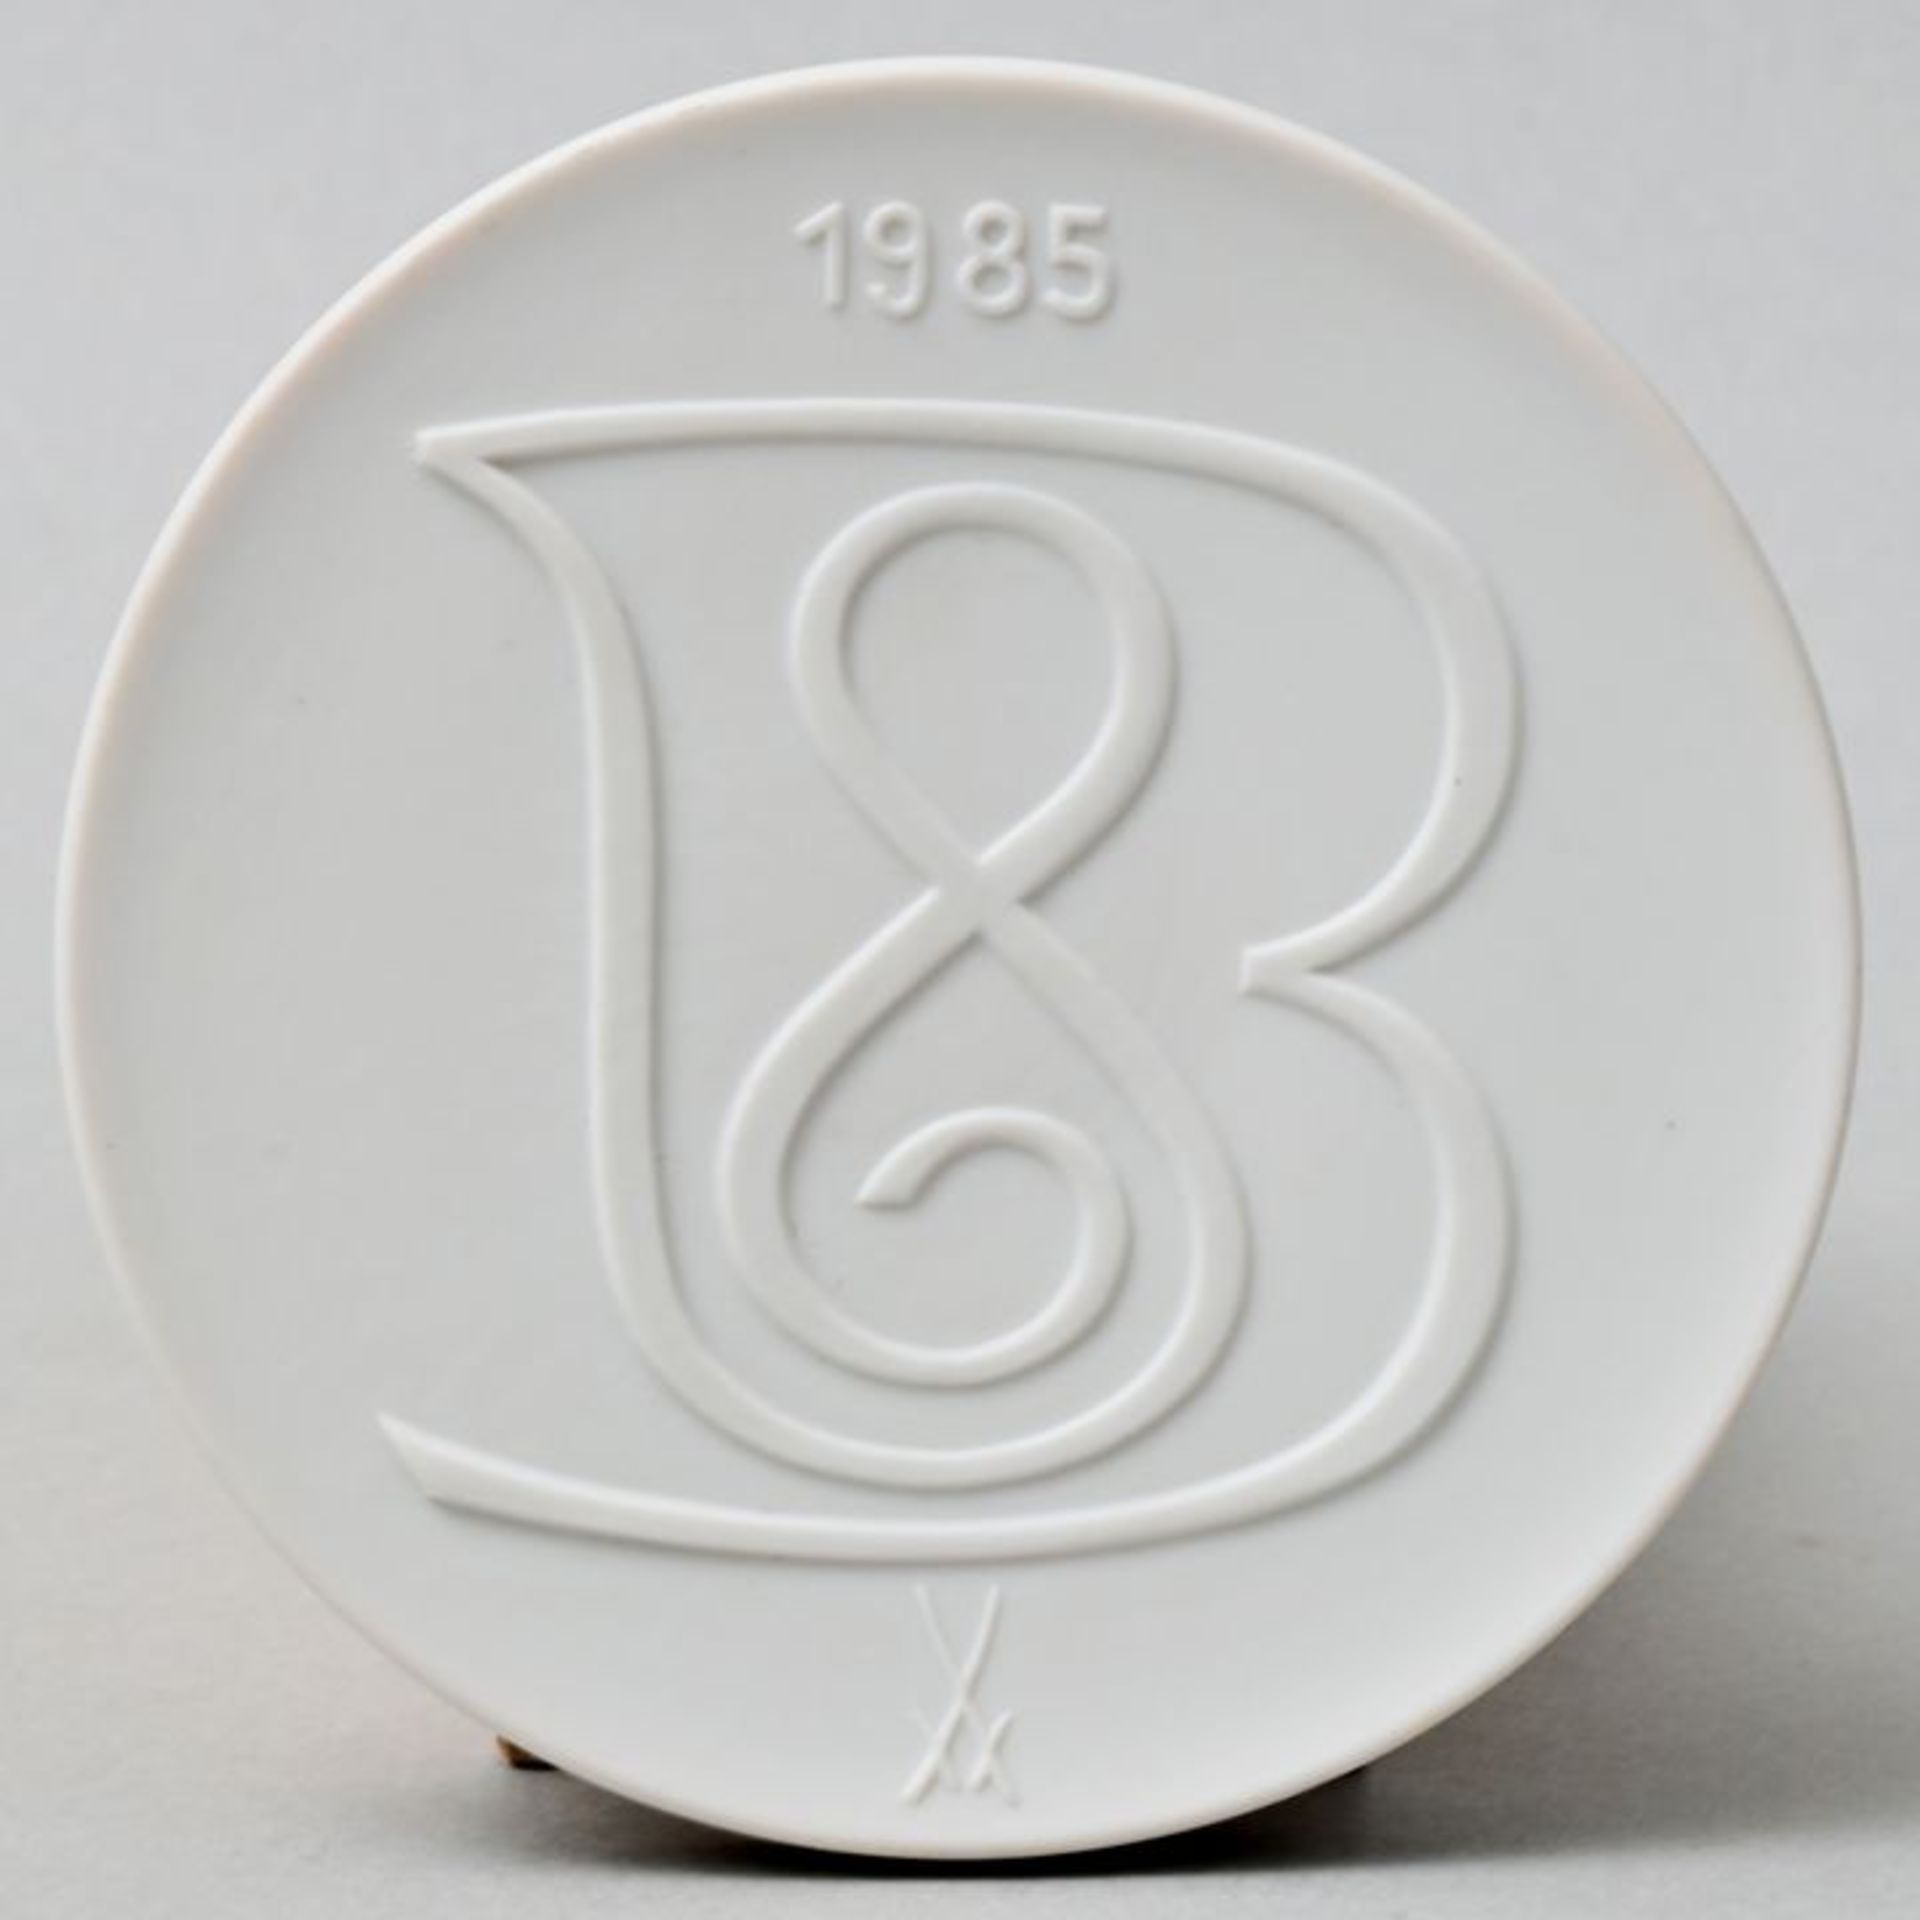 Bach-Plakette/ porcelain plaque - Image 3 of 3